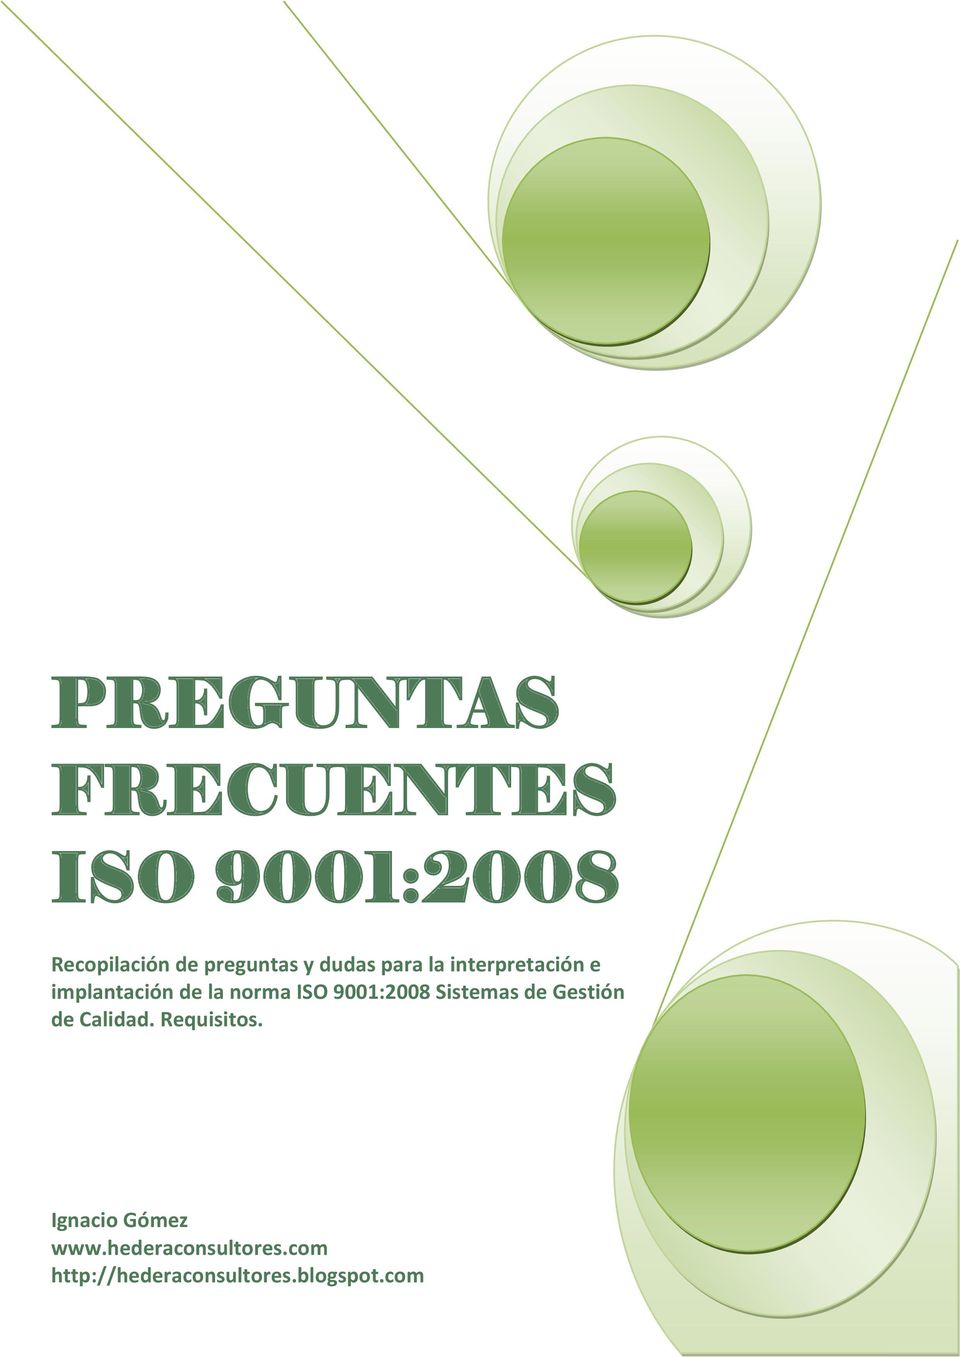 de la norma ISO 9001:2008 Sistemas de Gestión de Calidad.